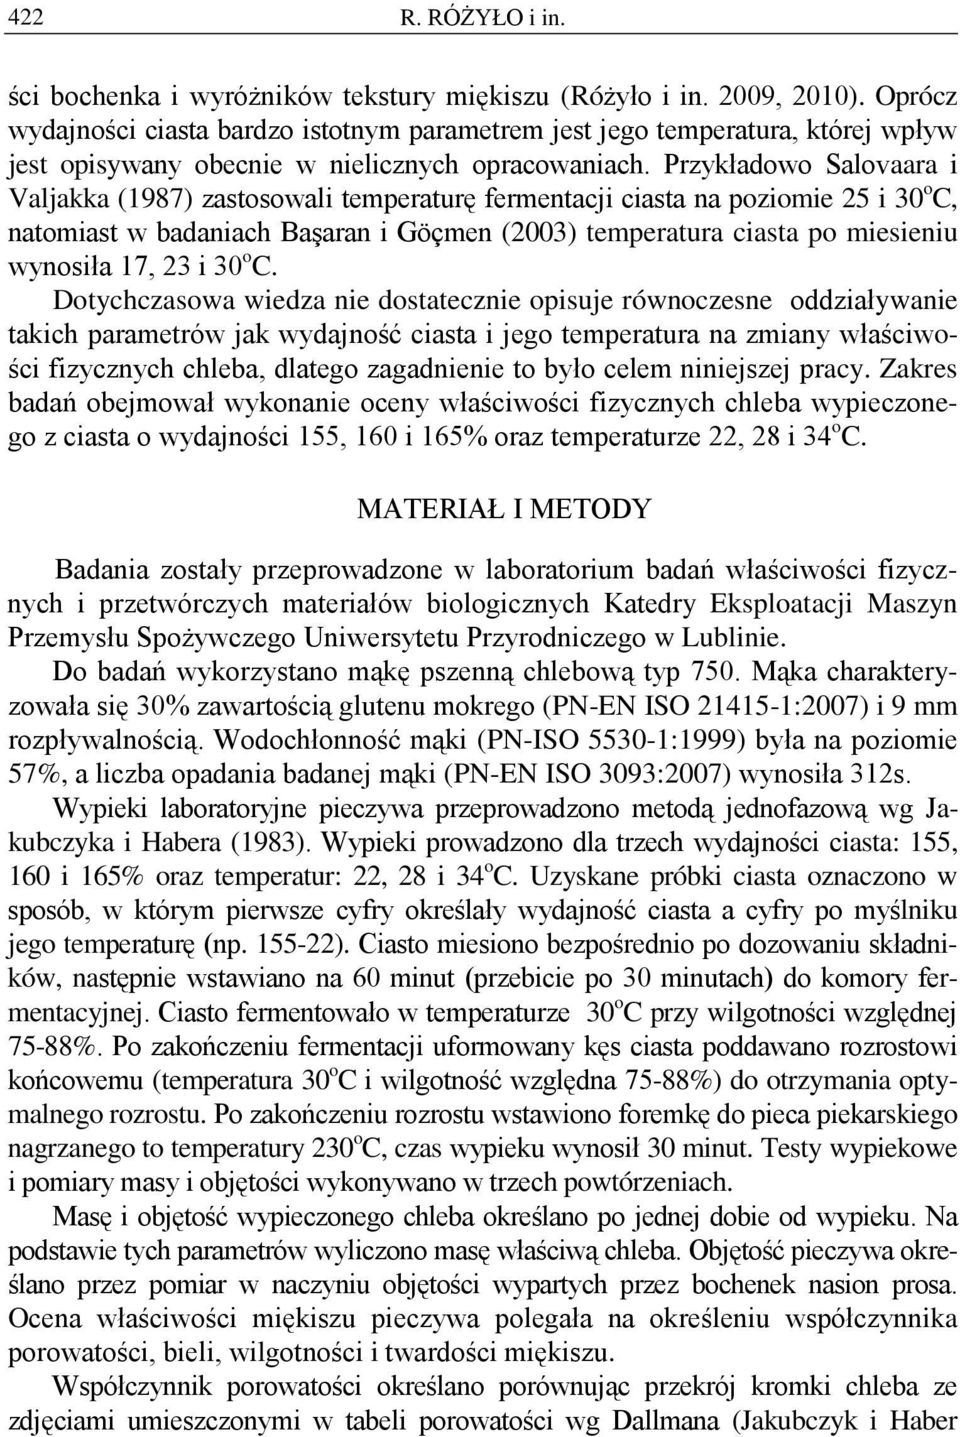 Przykładowo Salovaara i Valjakka (1987) zastosowali temperaturę fermentacji ciasta na poziomie 25 i 30 o C, natomiast w badaniach Başaran i Göçmen (2003) temperatura ciasta po miesieniu wynosiła 17,